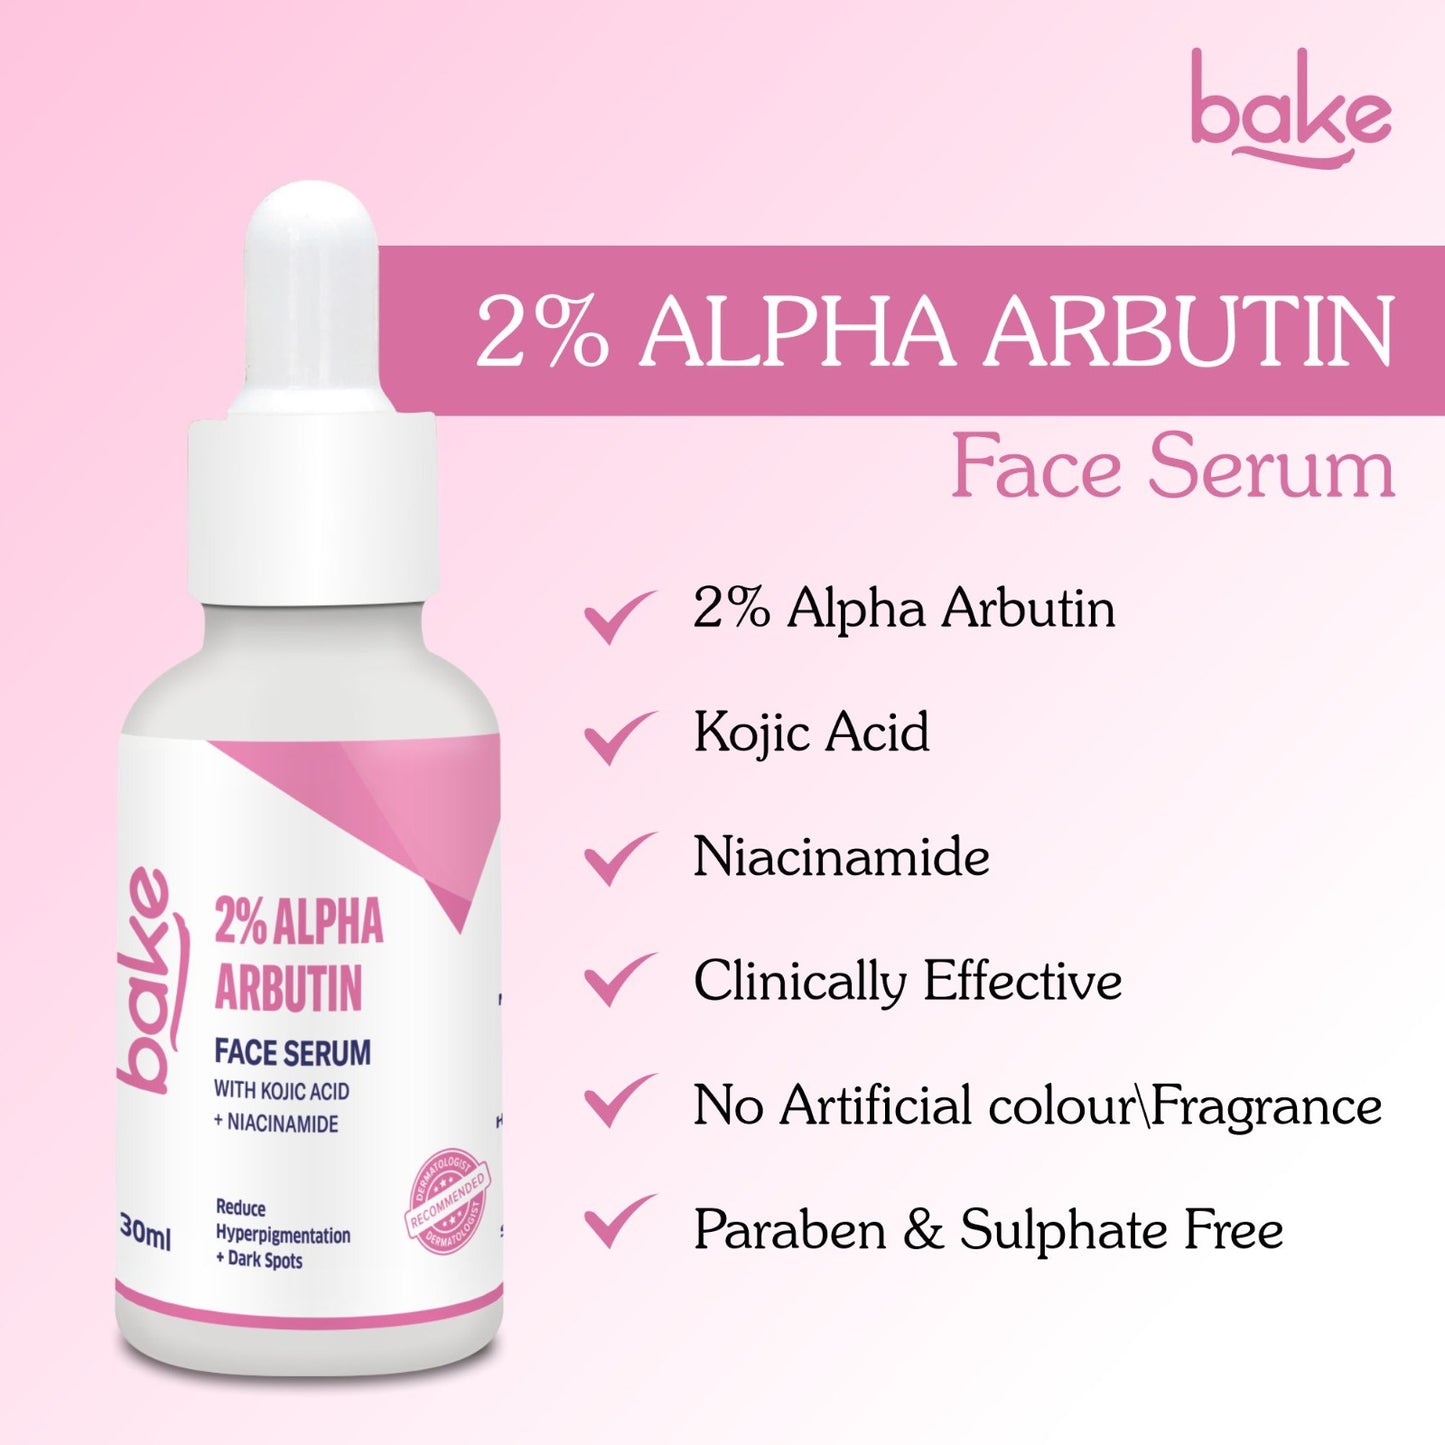 2% Alpha Arbutin Face Serum